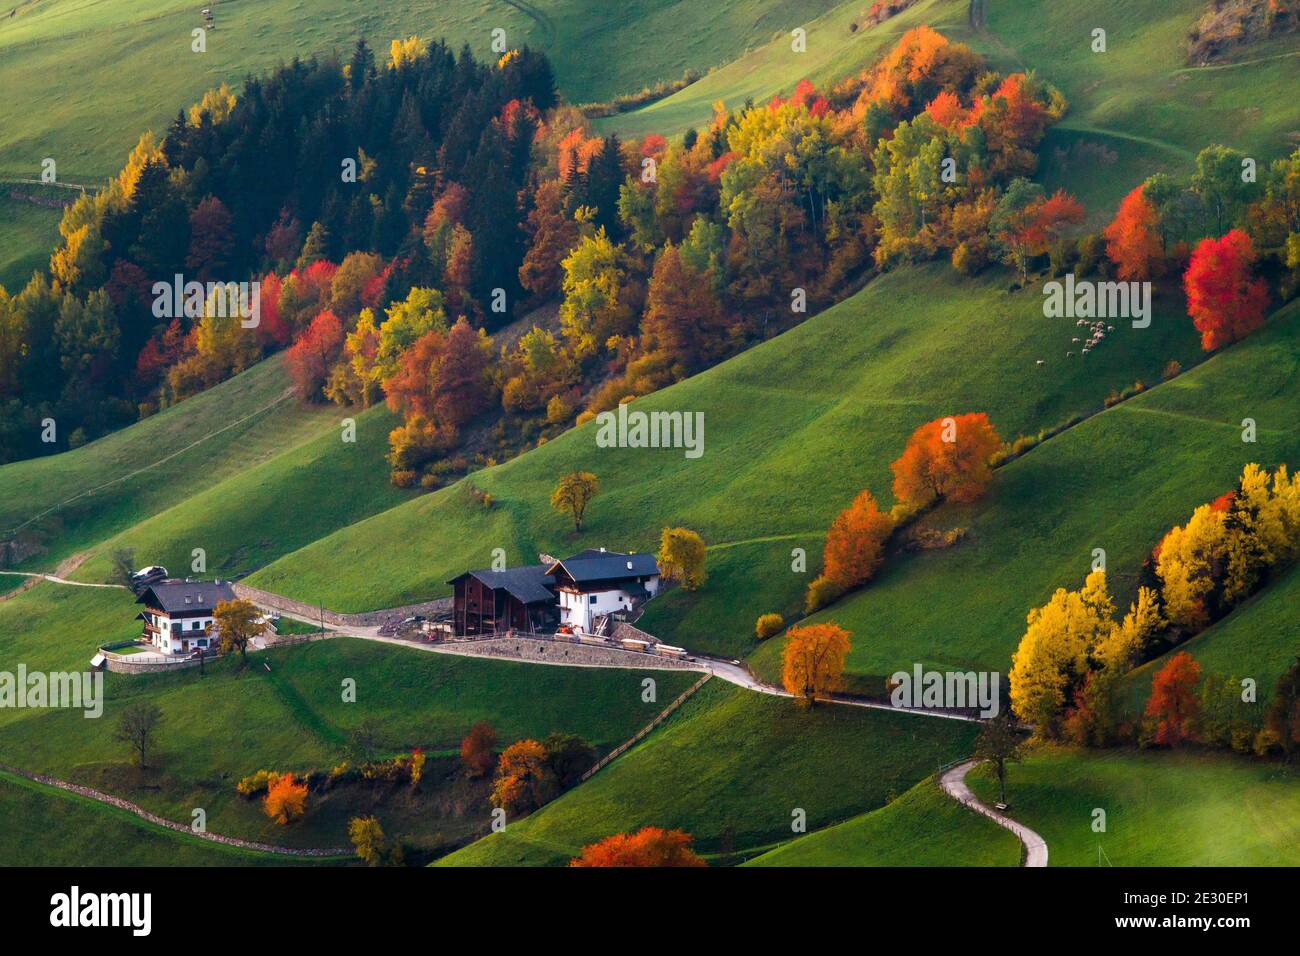 Vista dei colori dell'autunno nella Valle di Funes. Val di Funes, Alpi Dolomiti, Trentino Alto Adige, Italia. Foto Stock